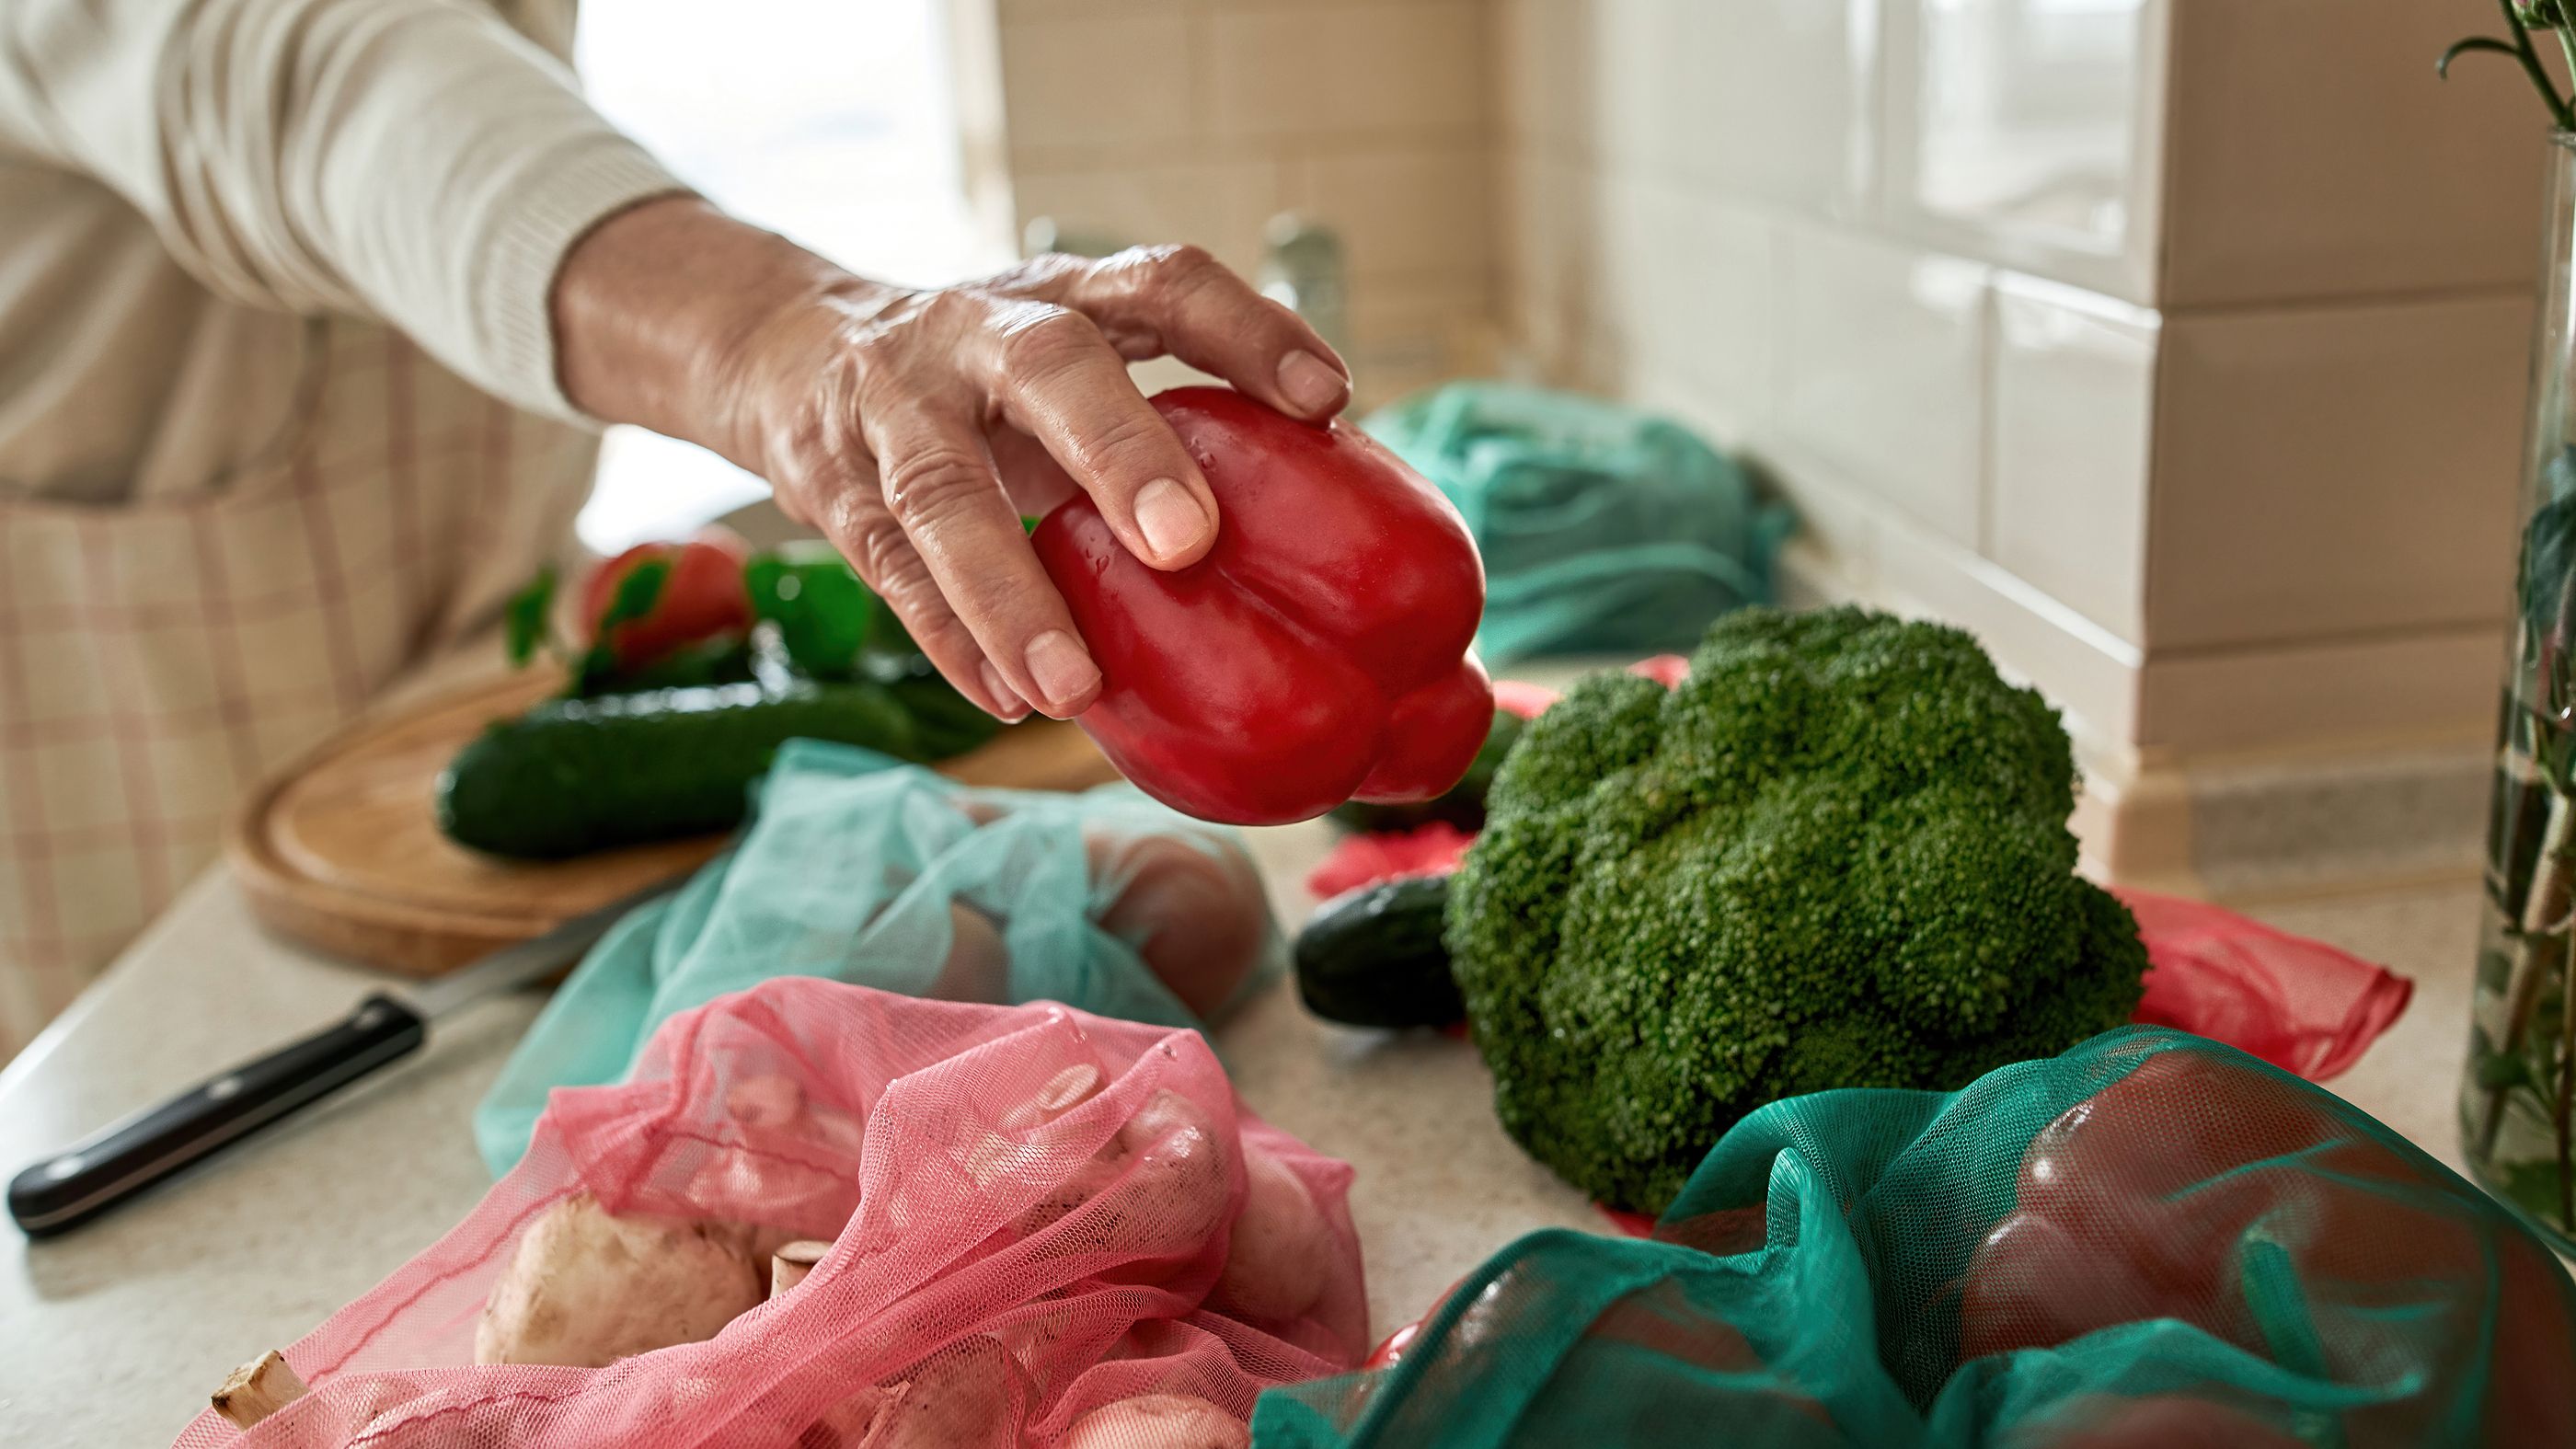 Las dietas ricas en proteínas vegetales ayudan a mantenerse saludable en la vejez. Foto: Bigstock